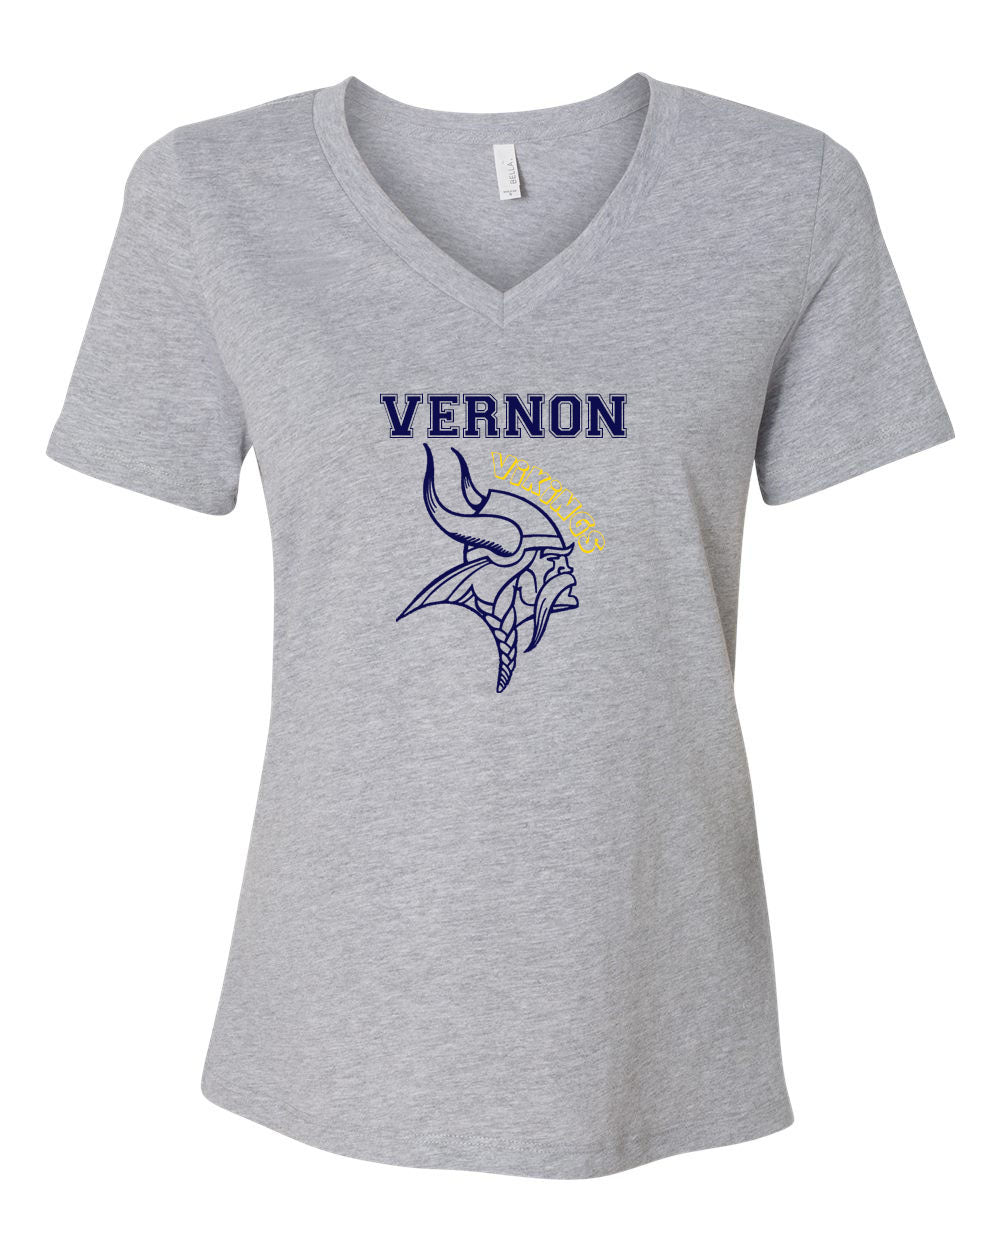 Vernon Design 6 V-neck T-shirt